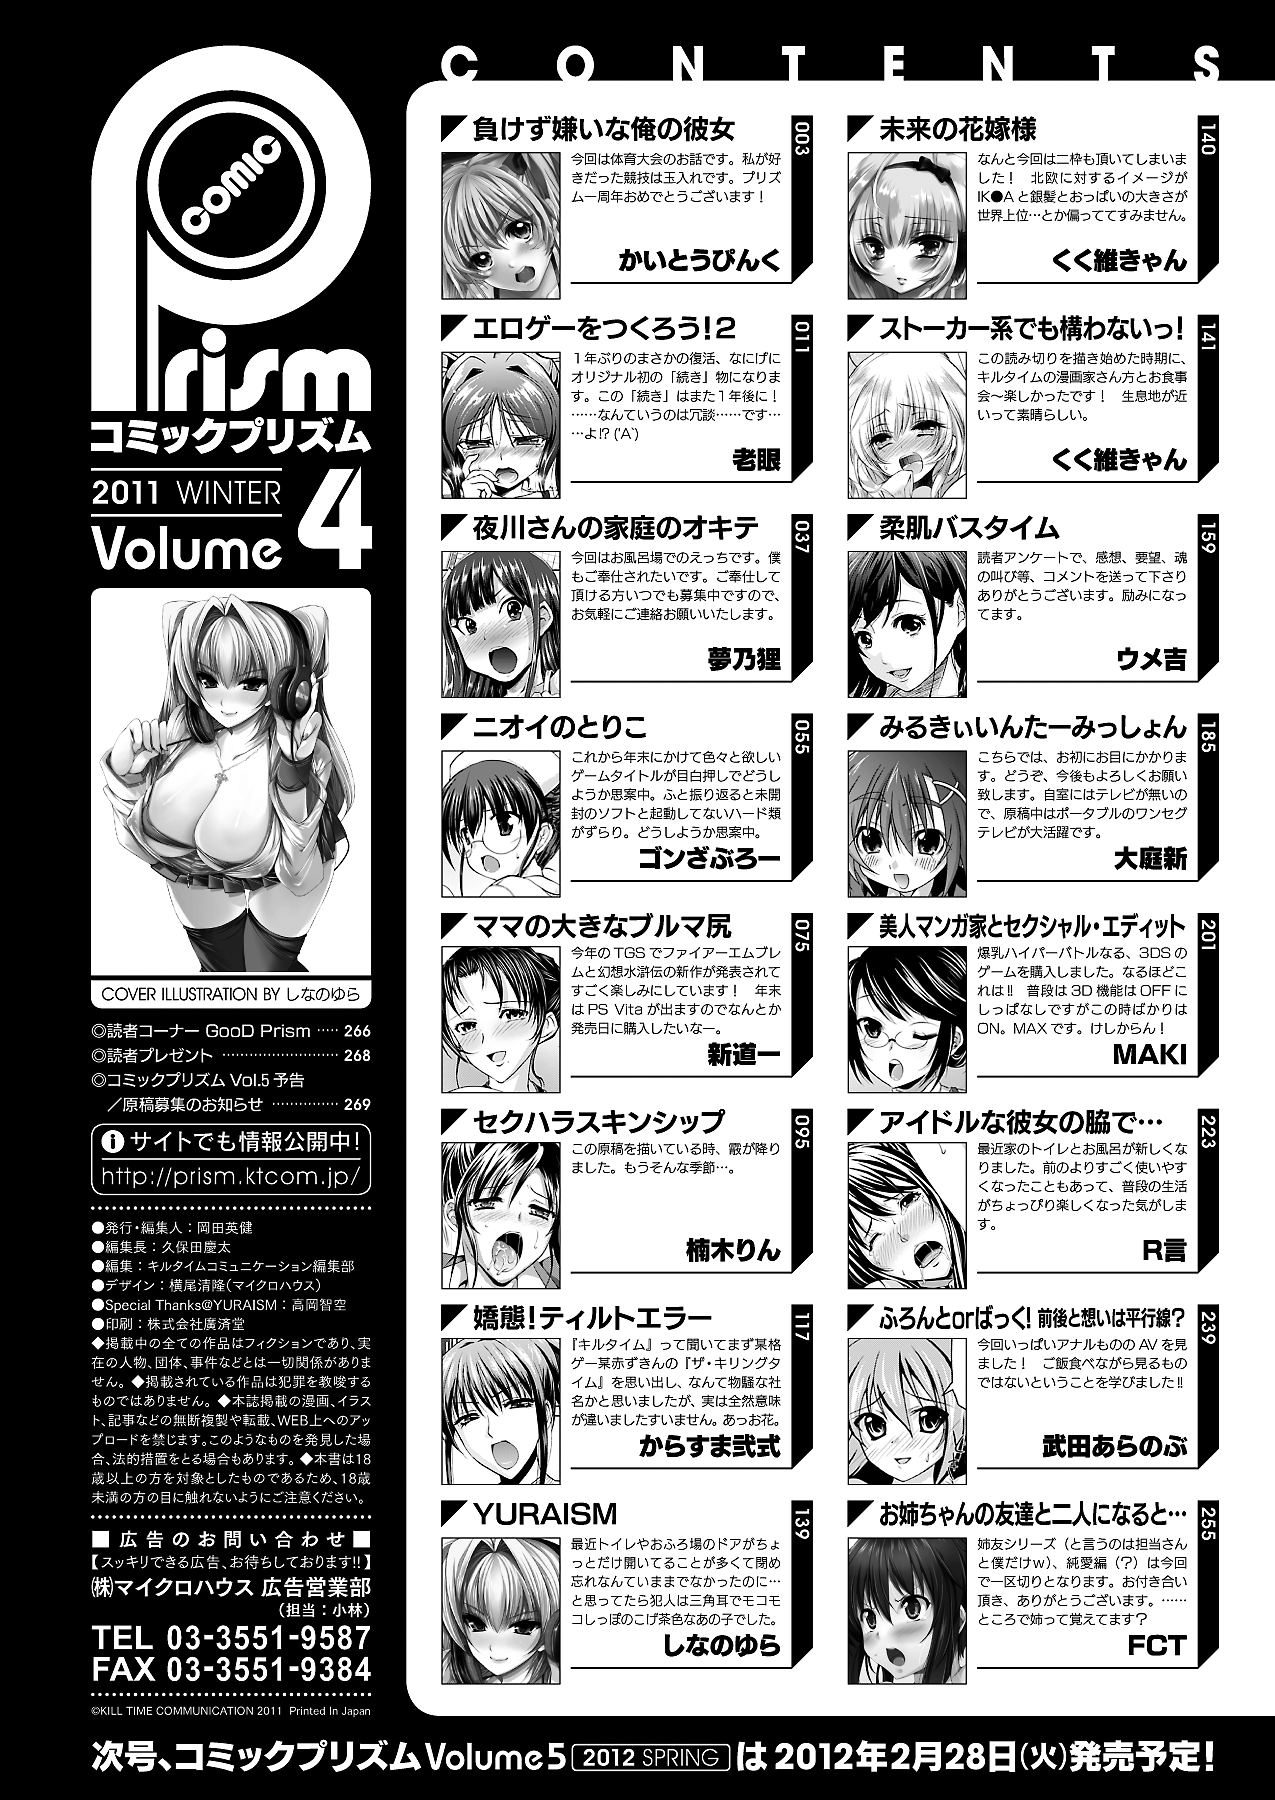 [雑誌]コミックプリズム Vol 4 2011年 WINTER